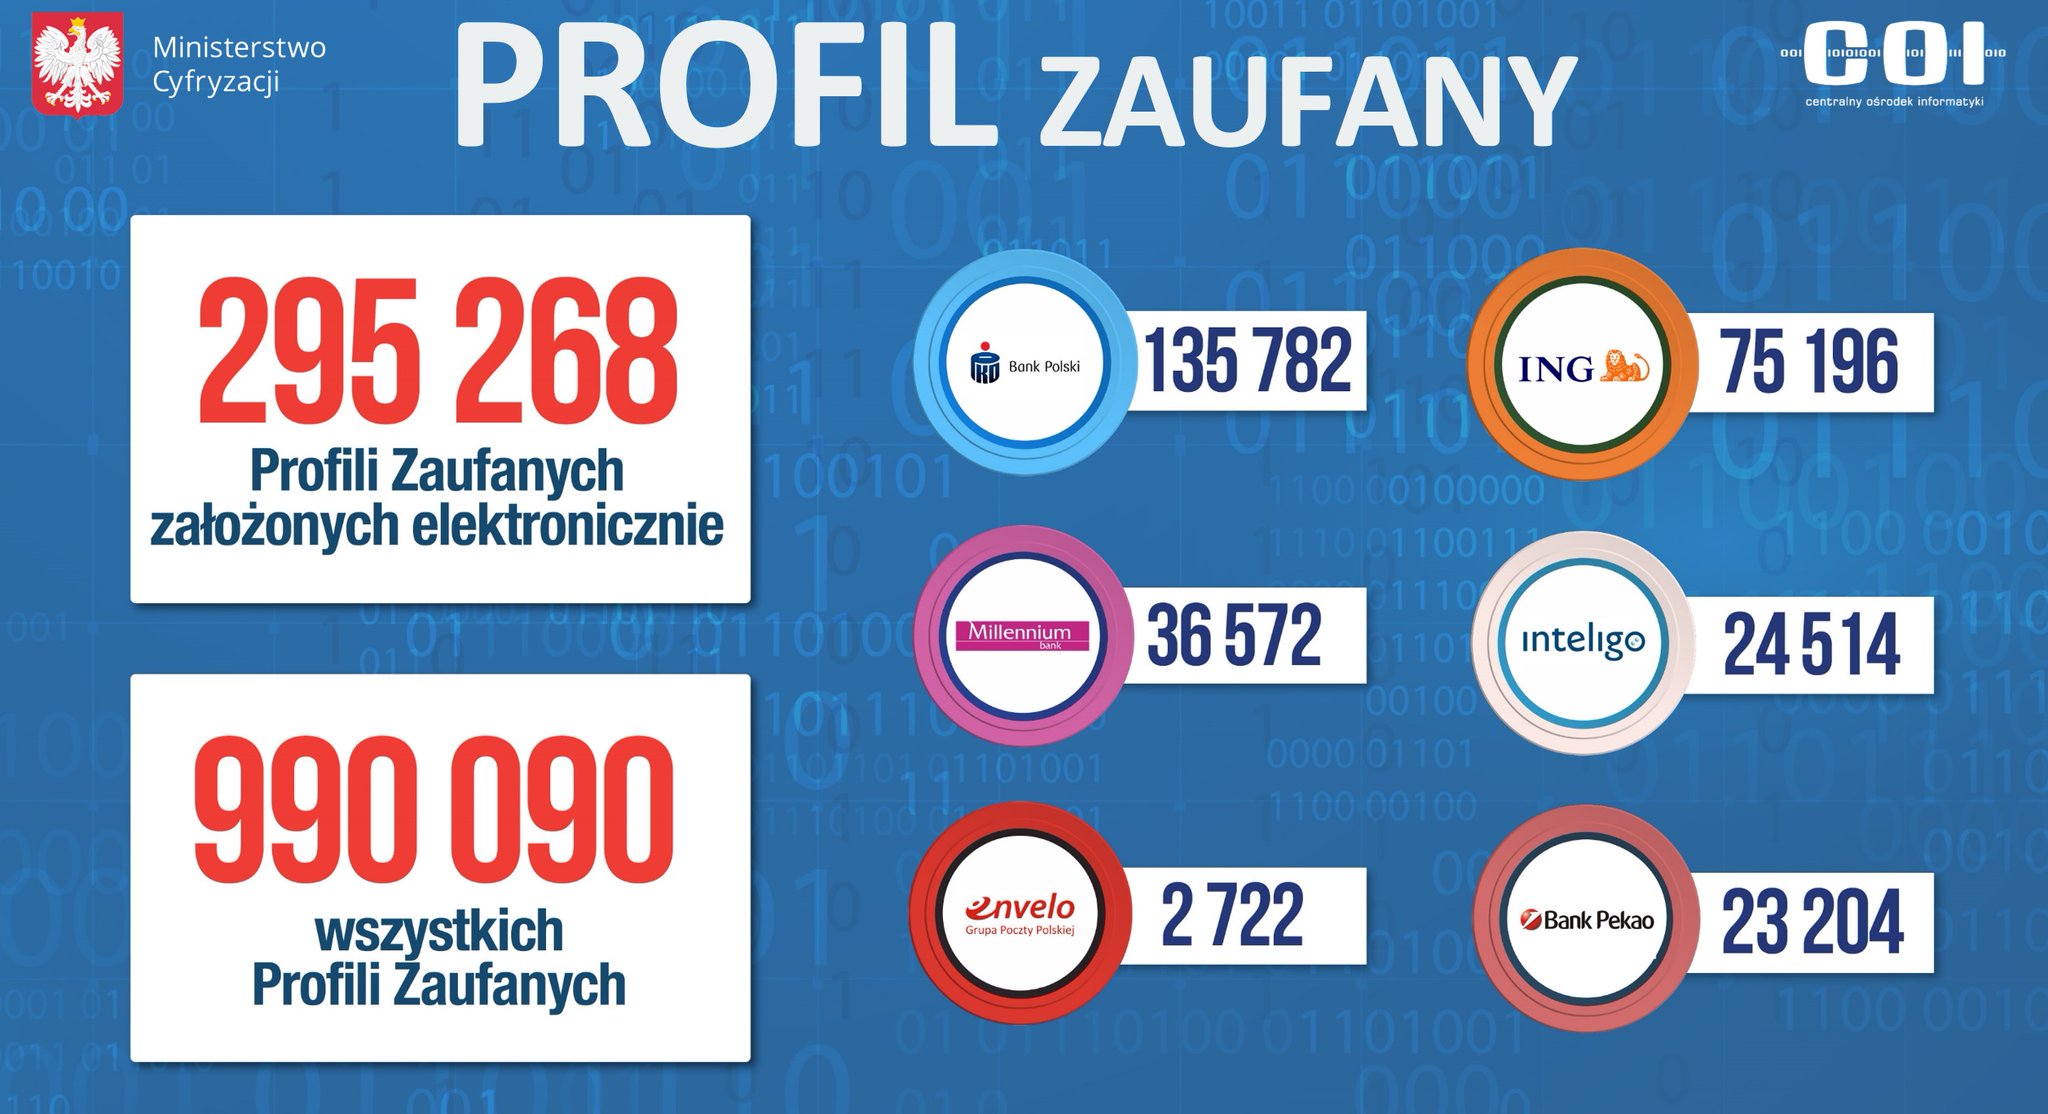 Profil Zaufany przez bankowość elektroniczną - dane Ministerstwa Cyfryzacji.